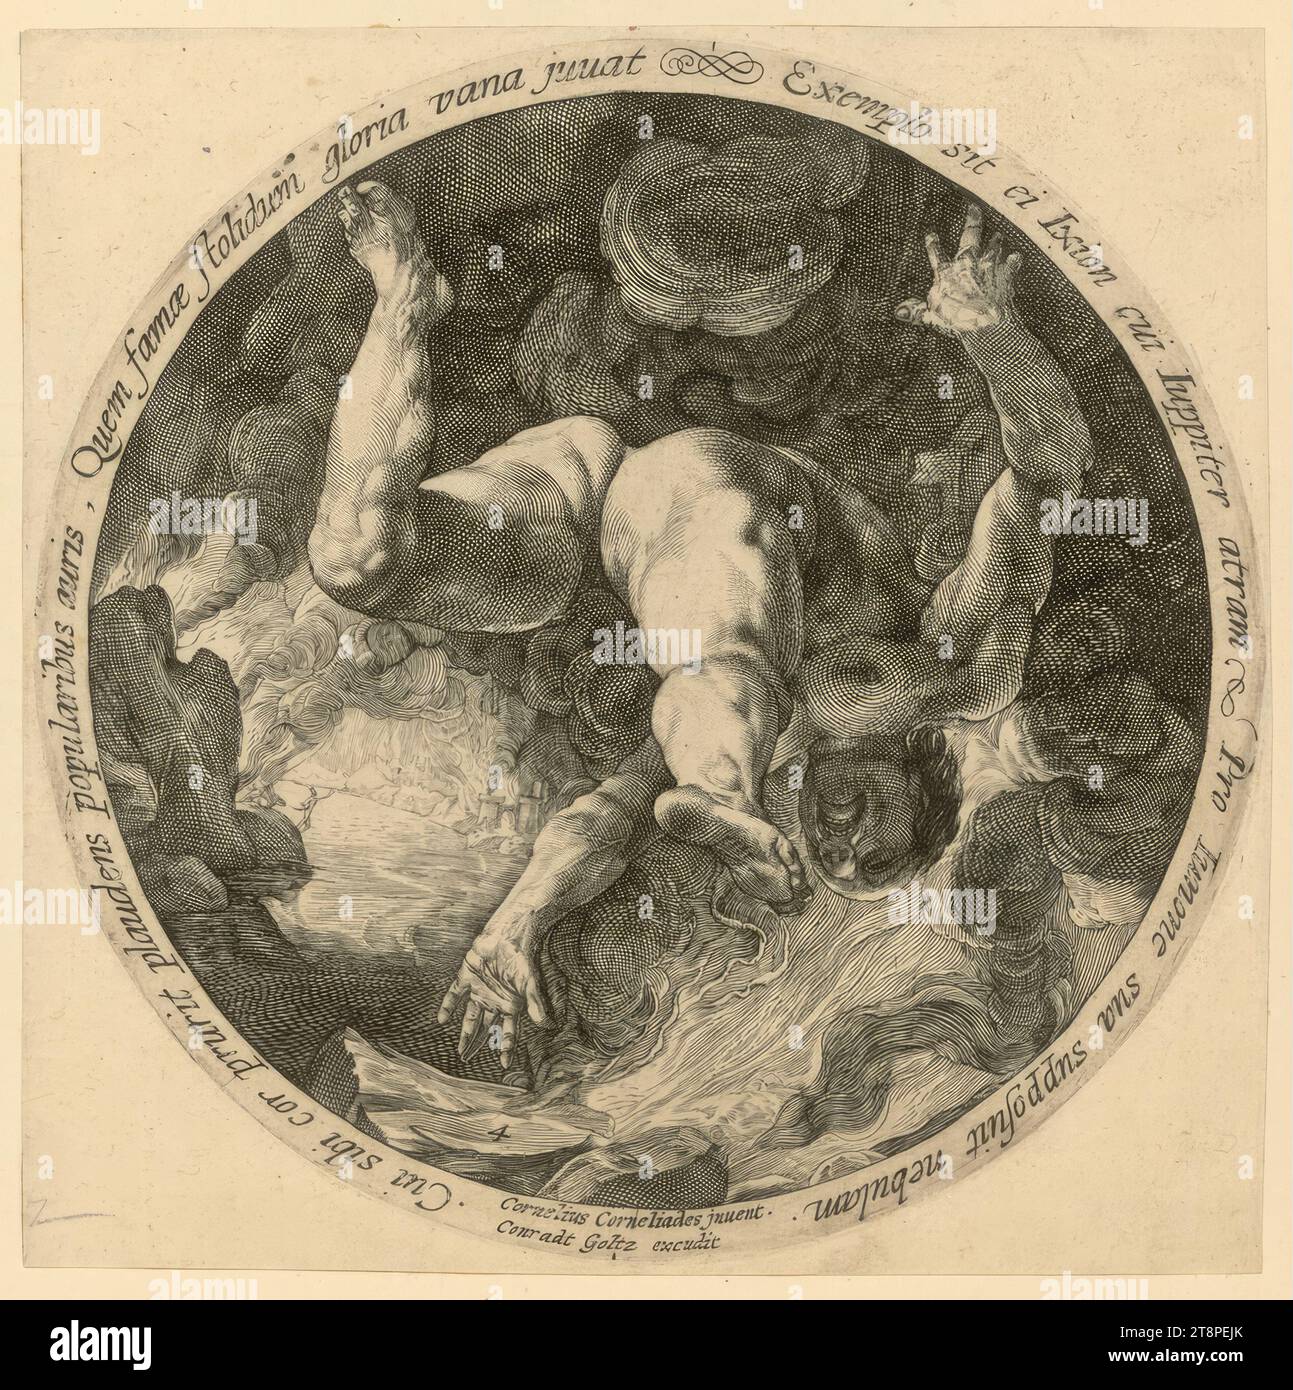 Ixion, die vier Himmelsstürmer, um 1600, Druckgraphik, Kupferstich, Blatt: 18 x 18,4 cm, auf der Kreisperipherie: 'dessen Herz es juckt, den Volksohren zu applaudieren, denen die blöde Ruhm hilft.', Lass Ixion ihm ein Beispiel sein, dem Jupiter dunkel wird, Er nahm eine Wolke für seinen eigenen Juno an.', l.u. '4'; Inschrift auf der Kreisperipherie: "dessen Herz es juckt, den Ohren der Menschen zu applaudieren, denen die törichte Ruhm hilft, sei Ixion ein Vorbild für ihn, den Jupiter schwärzte, für seinen eigenen Juno, er nahm eine Wolke an Stockfoto